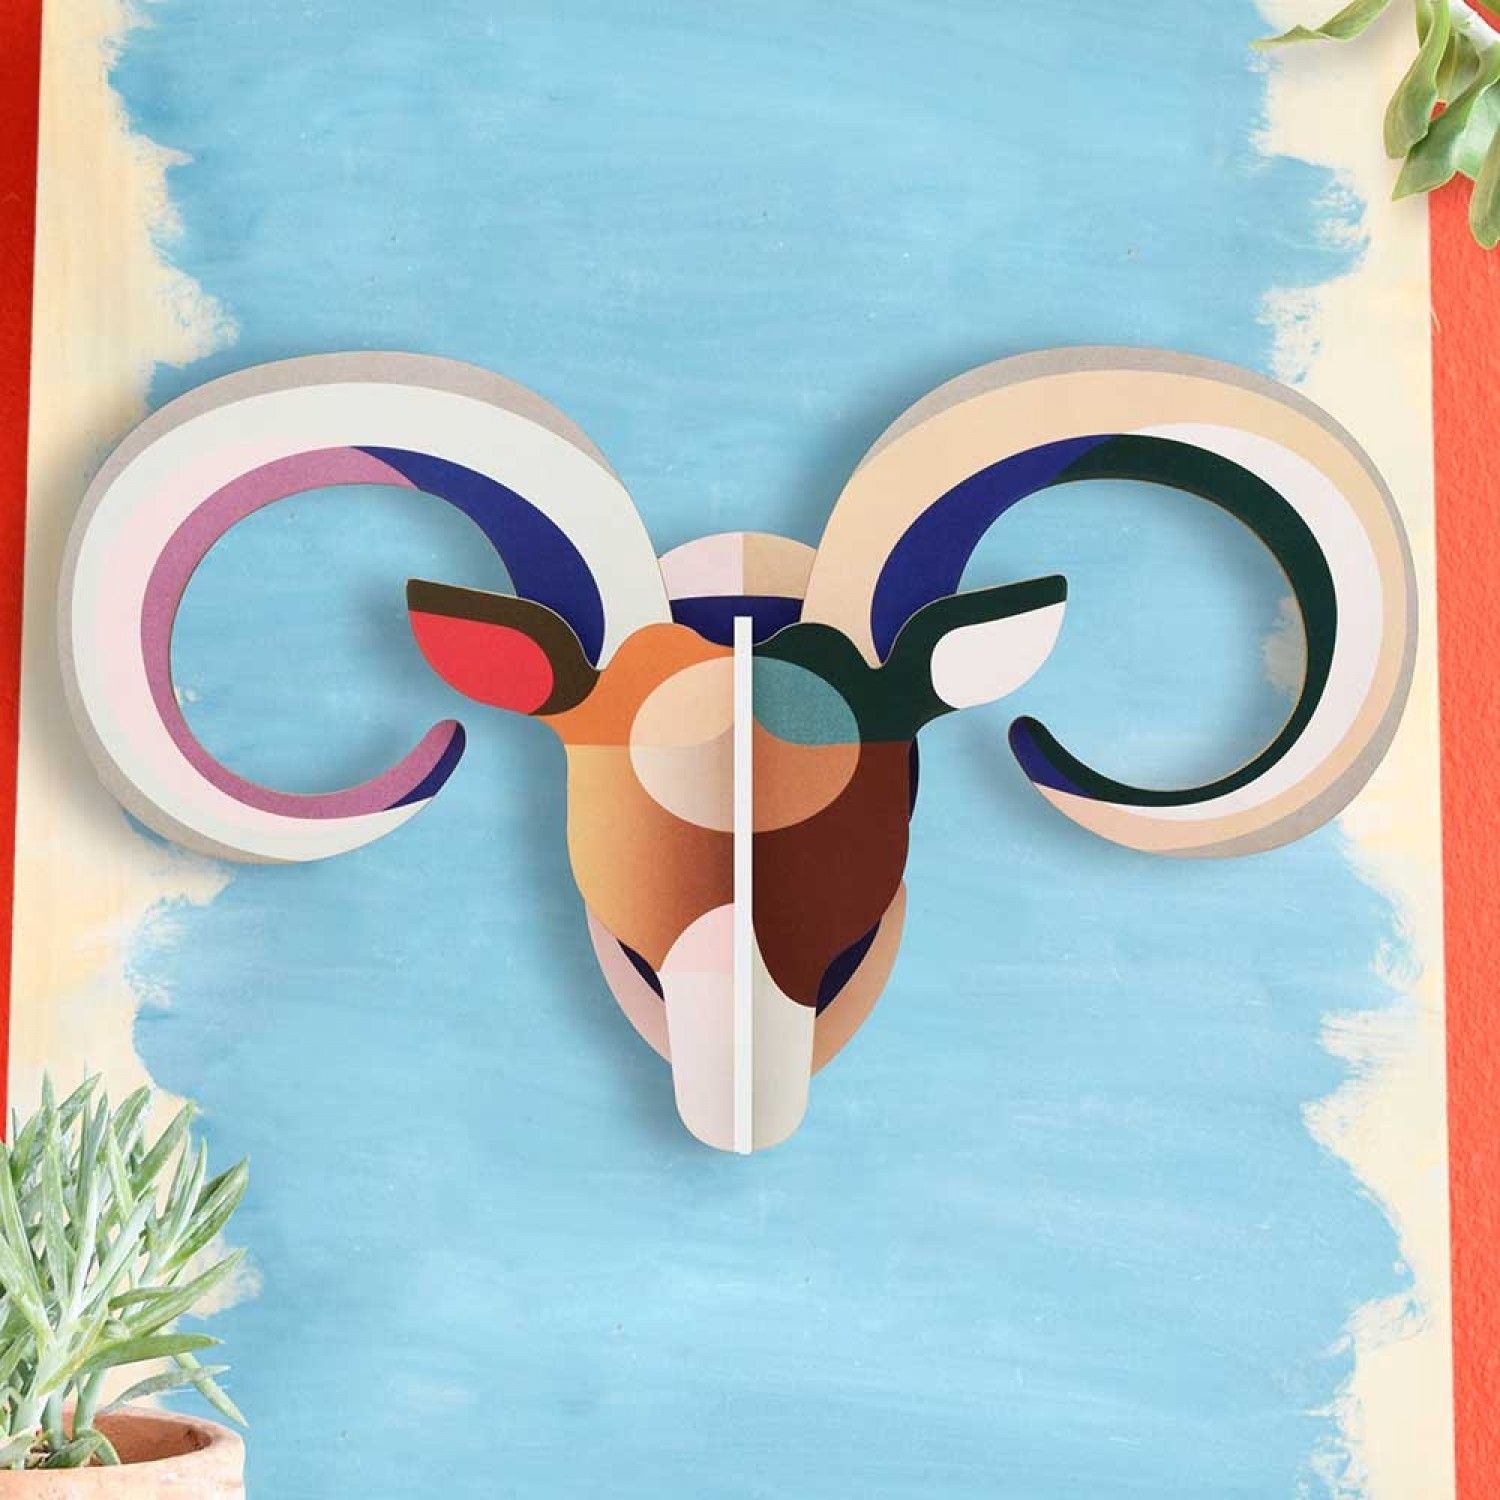 3D Wall Decoration Mouflon » studio ROOF